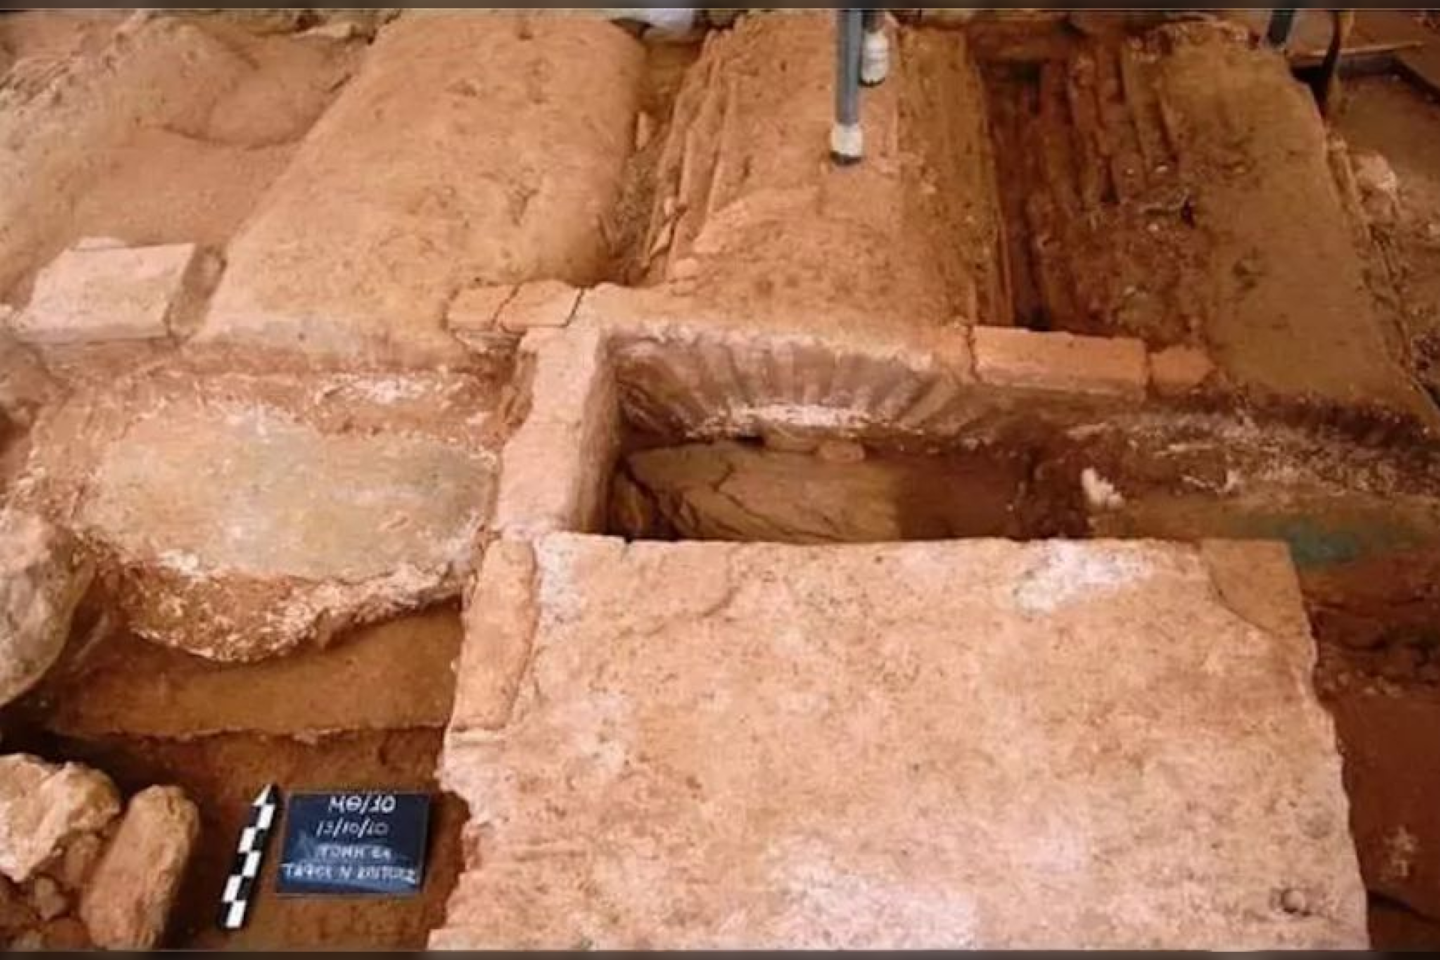  Per pastaruosius kasinėjimus archeologai čia atrado septynis kapus. Kai kuriuose kapuose buvo palaidota po du asmenis – tačiau jokių įkapių nebuvo rasta. Tačiau arkos formos kape buvo asmens, kuris buvo palaidotas su ginklais, palaikai.<br>E.Maniotiso nuotr.